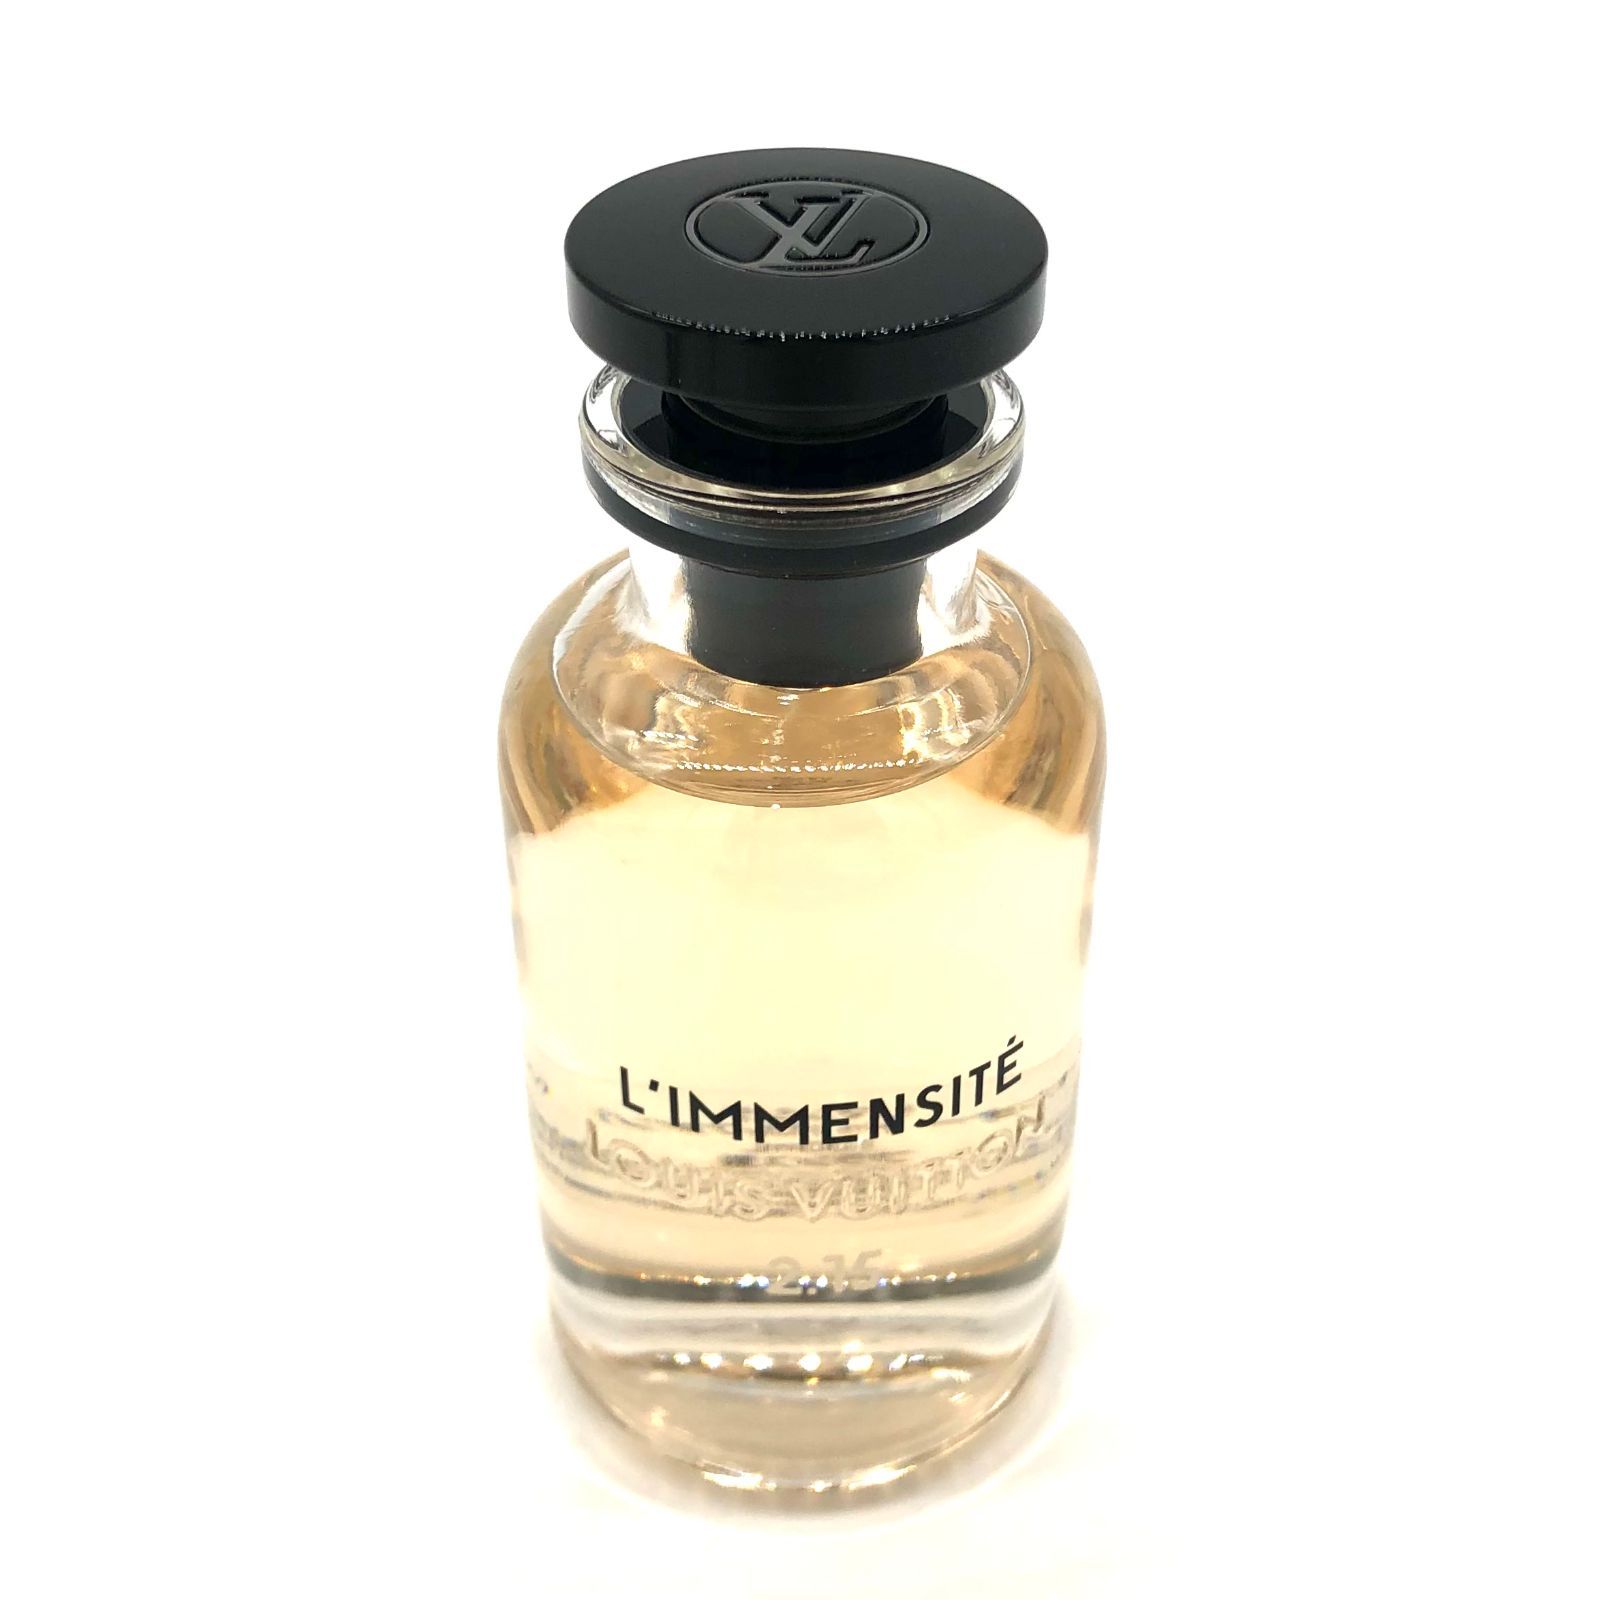 低価最新品ルイヴィトン リマンシテ オードゥパルファン 香水(ユニセックス)